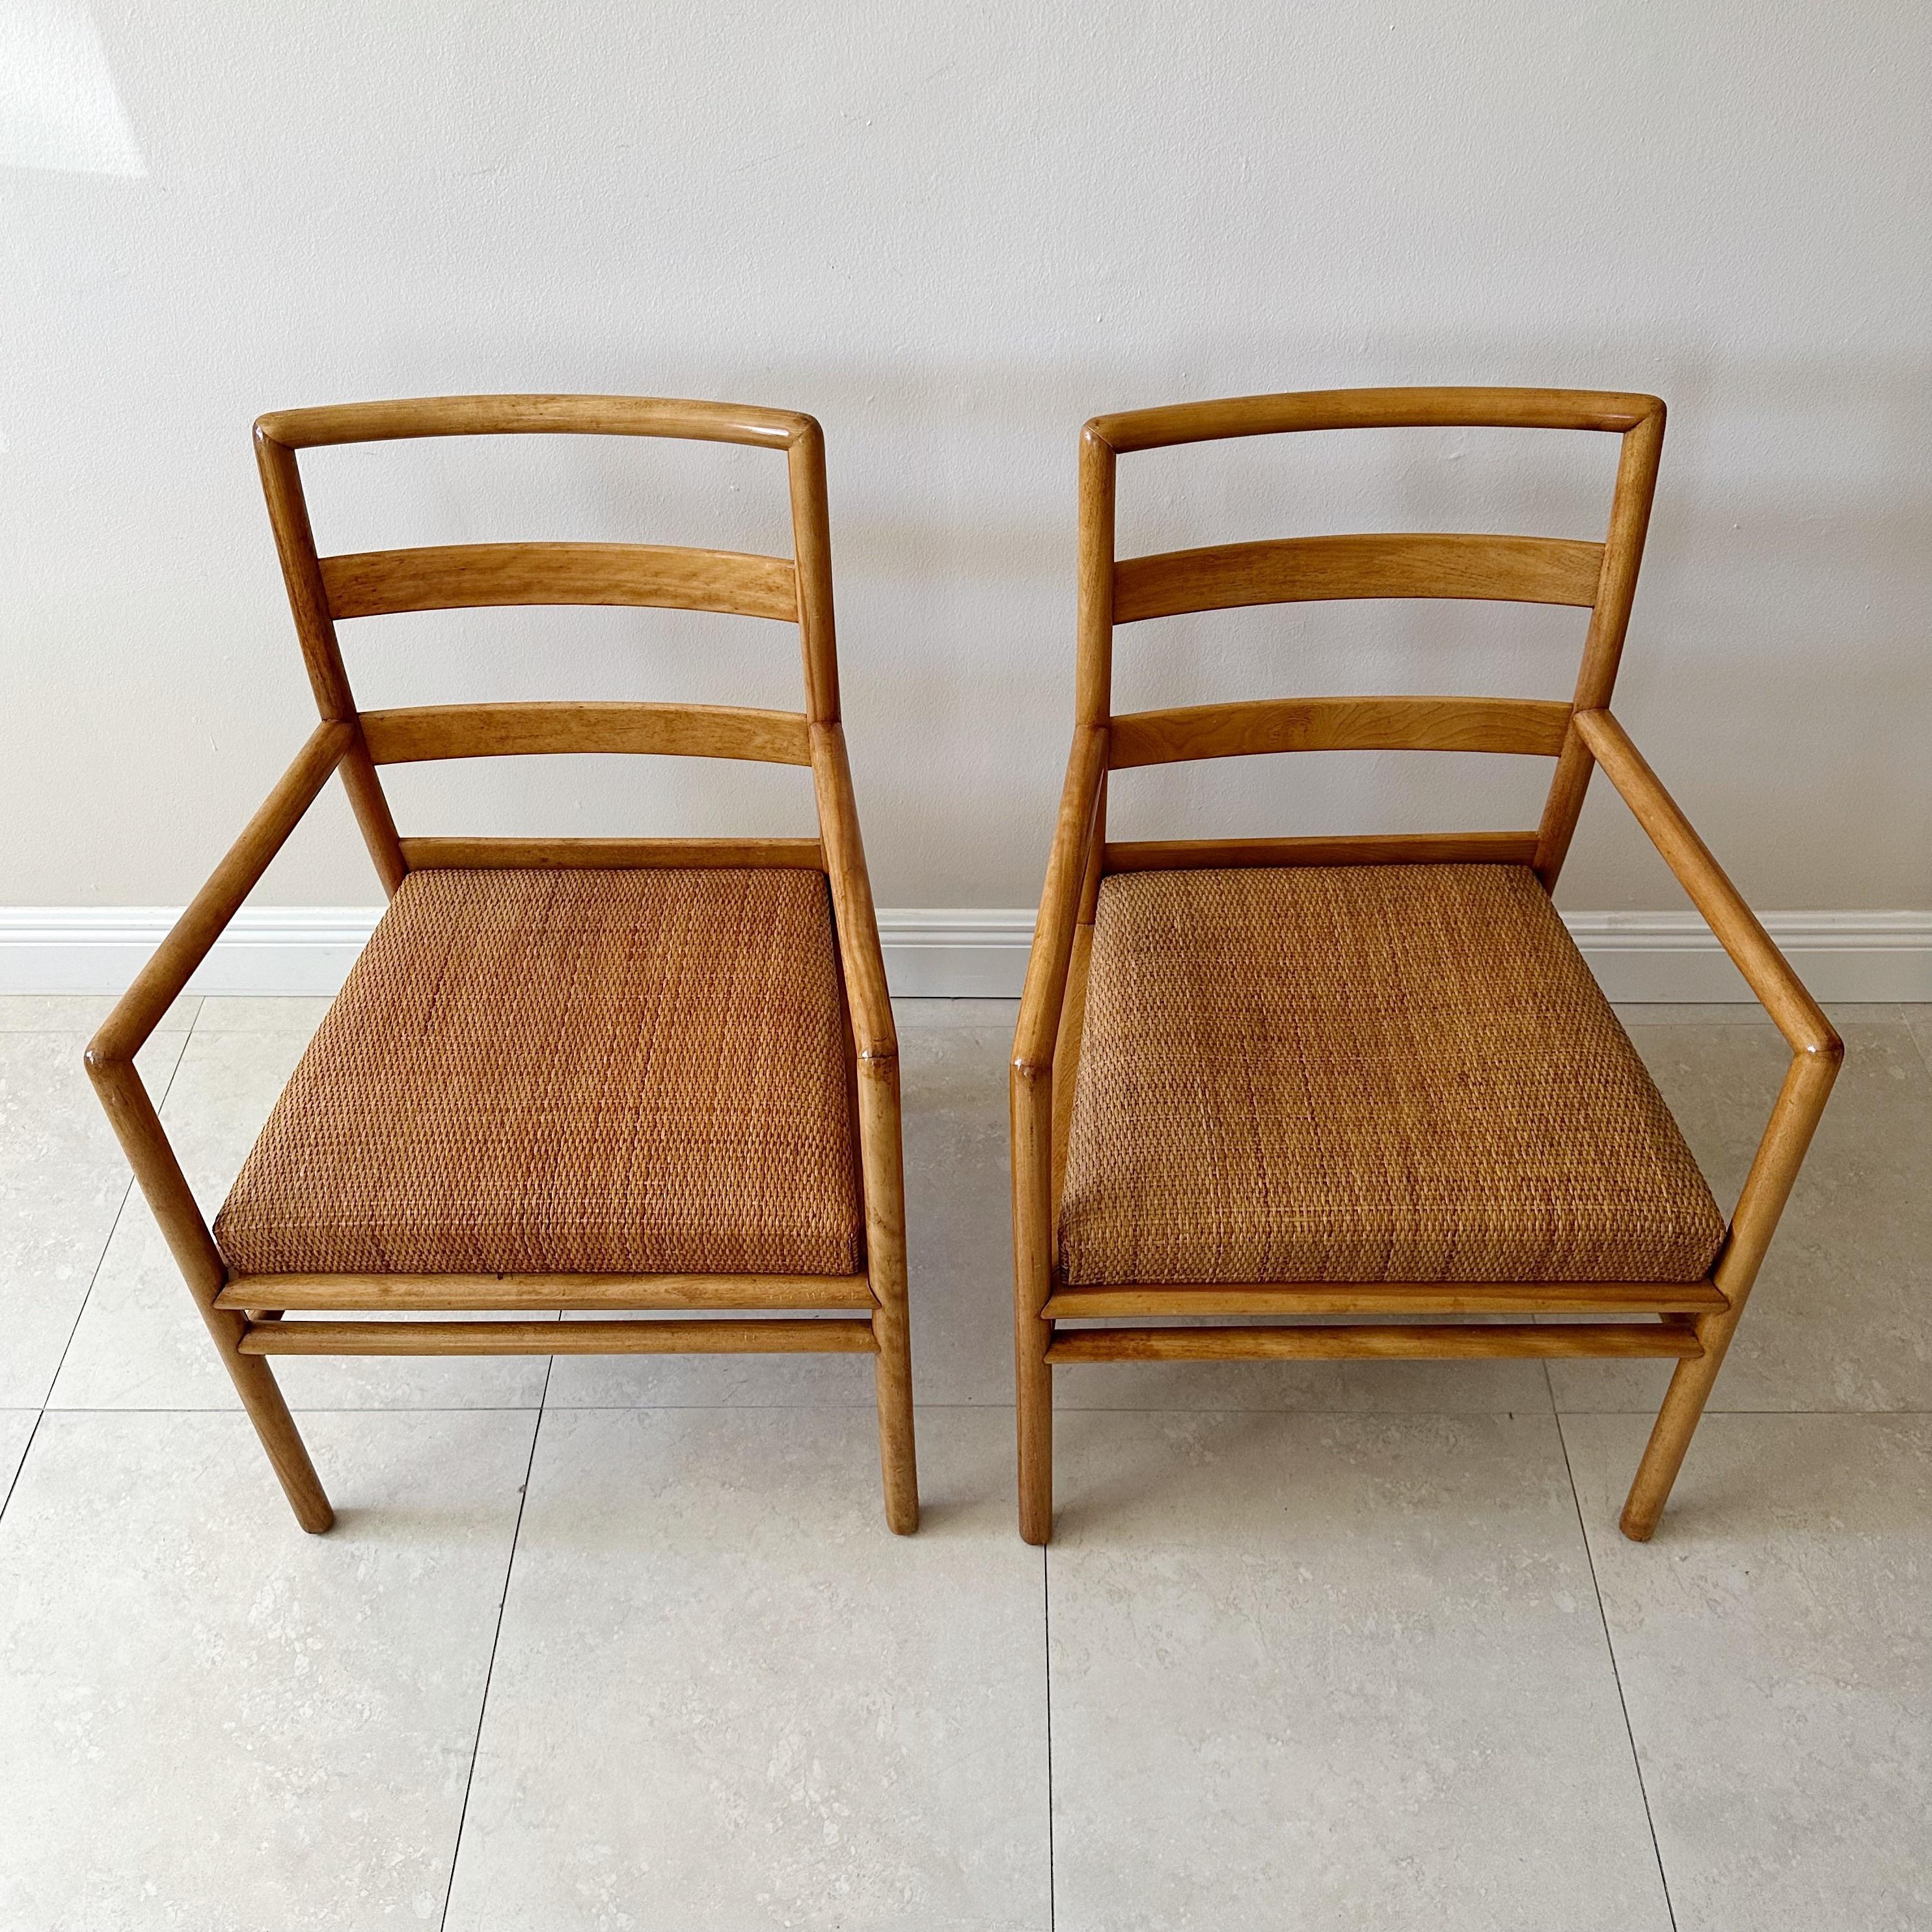 Ein Paar Sessel aus der Mitte des Jahrhunderts von T. H. Robsjohn Gibbings für John Widdicomb. Die Stühle haben einen leichten Holzrahmen, eine Sitzfläche aus kariertem Rattangeflecht und eine Leiterrückenlehne, die auf vier Dübelbeinen mit